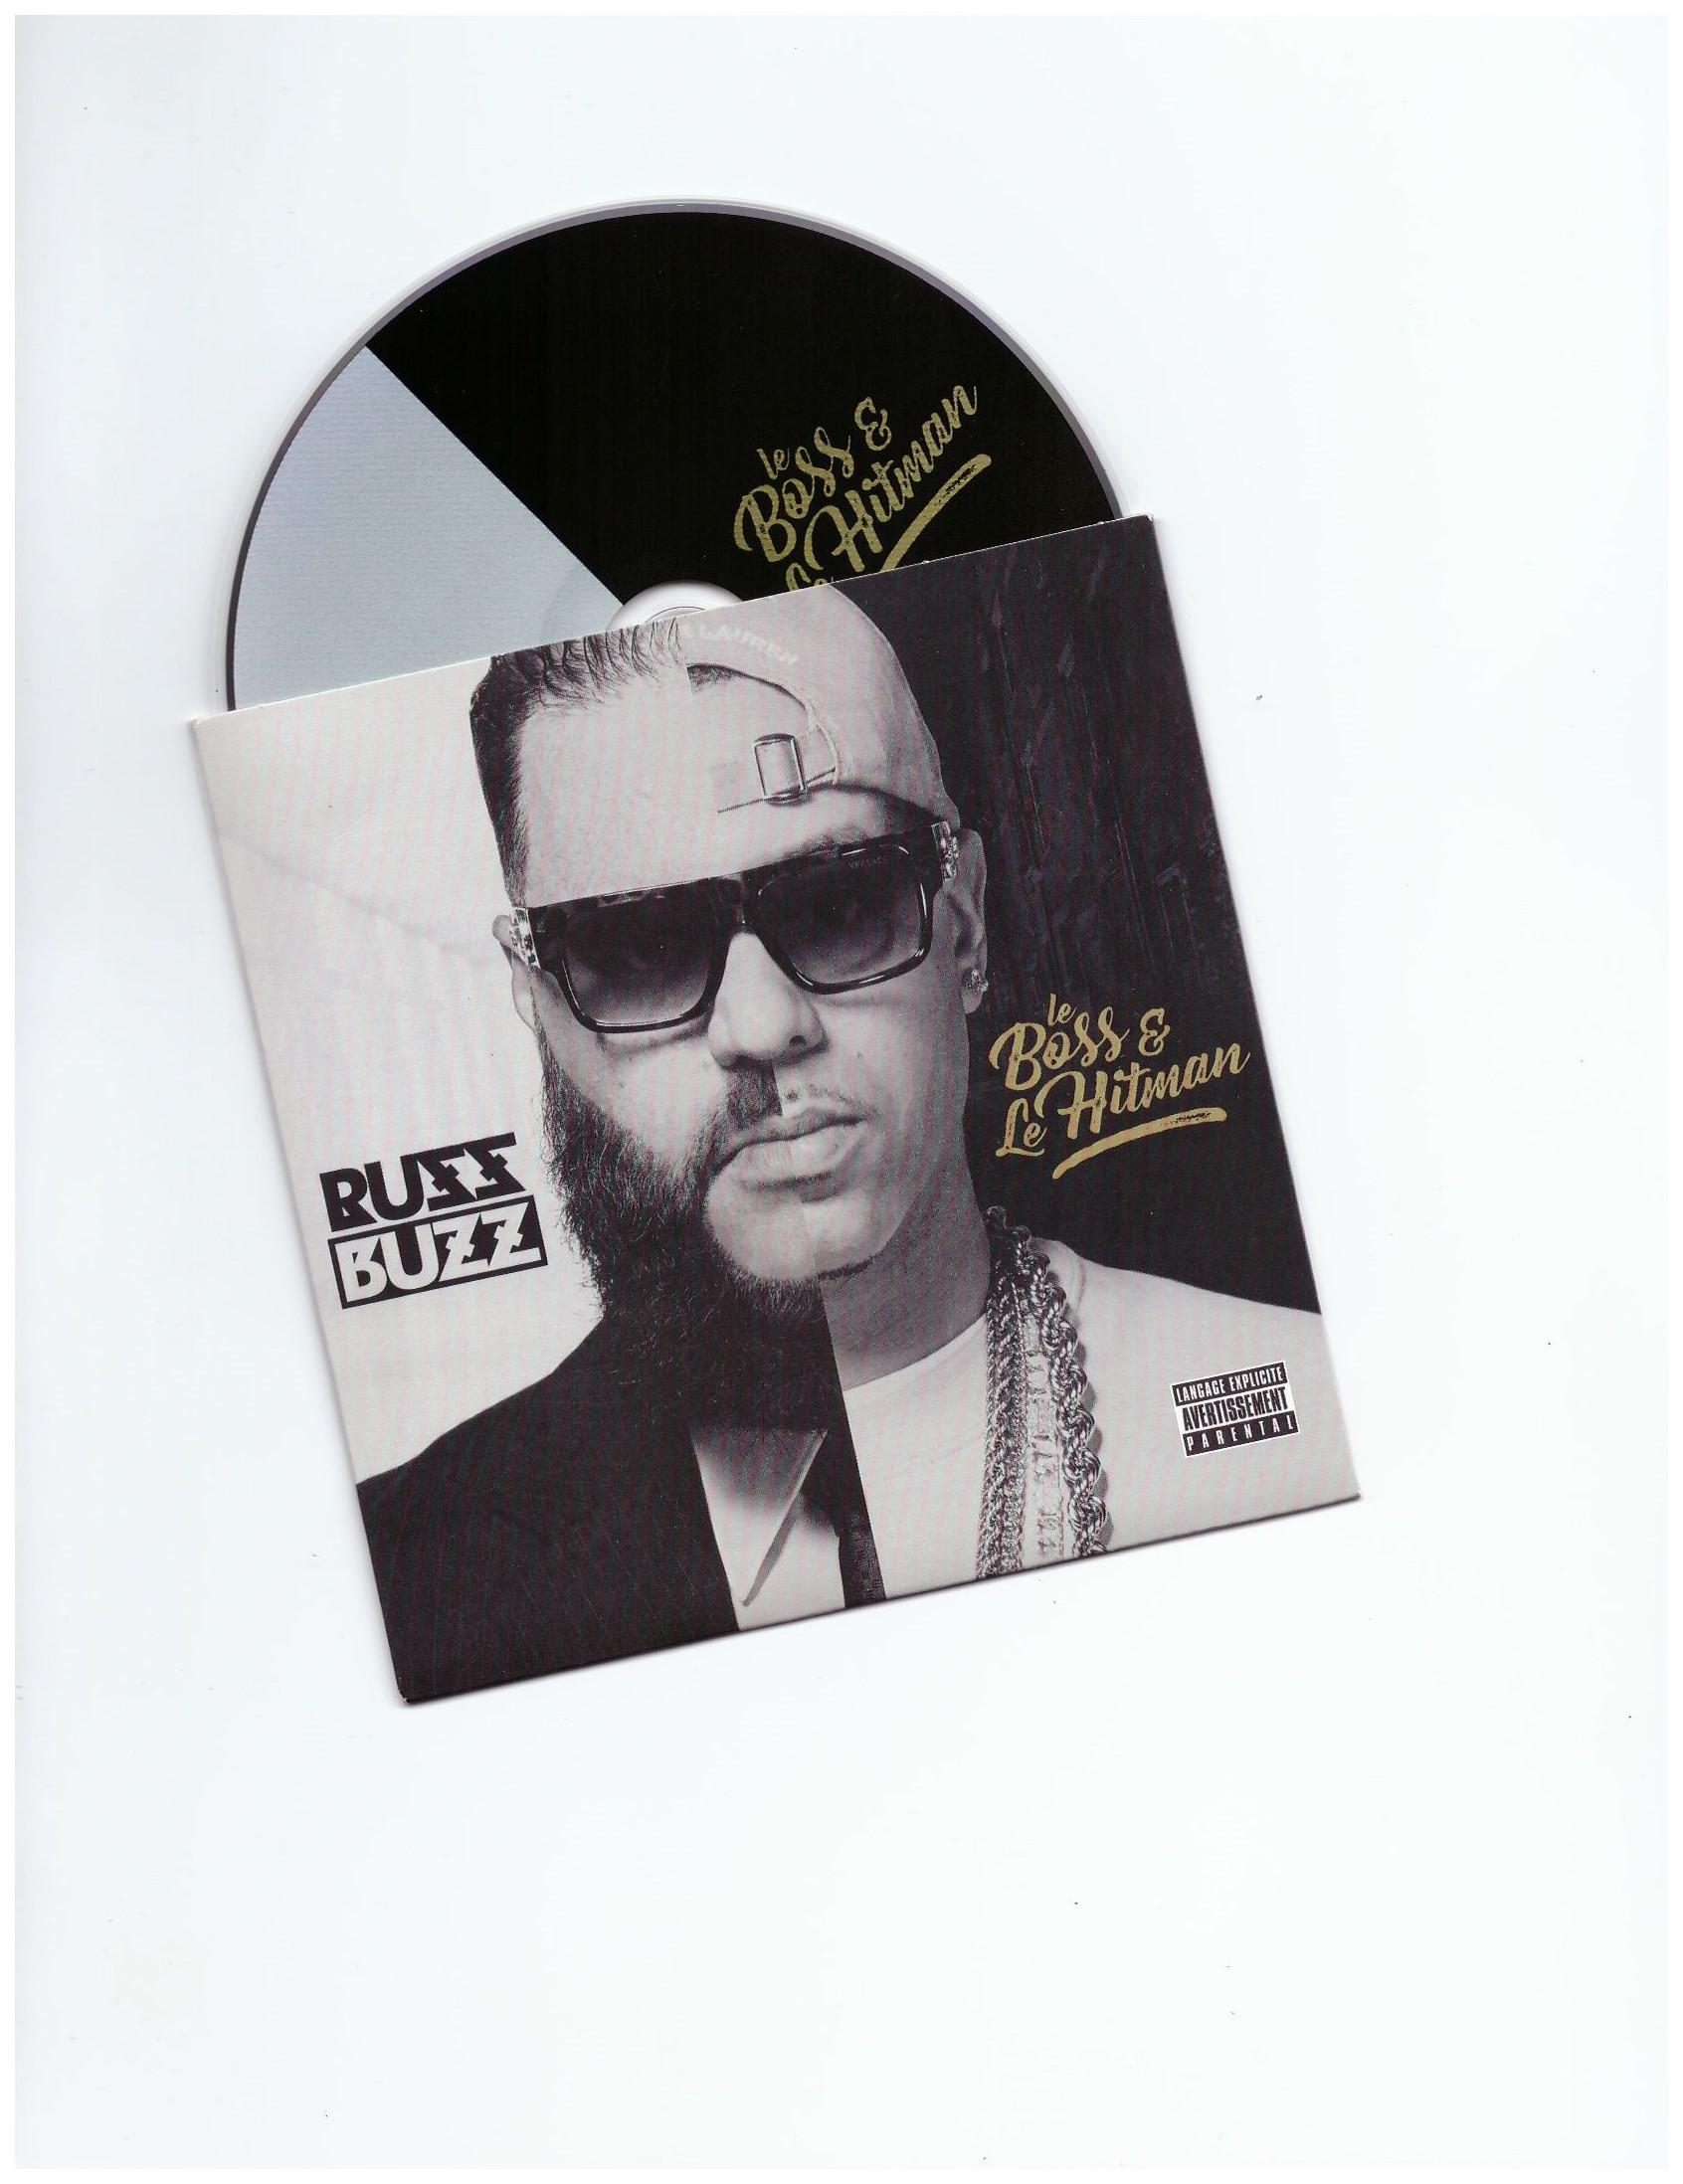 Ruff_X_Buzz--Le_Boss_Et_Le_Hitman-CD-FR-2018-WUS 00-ruf10